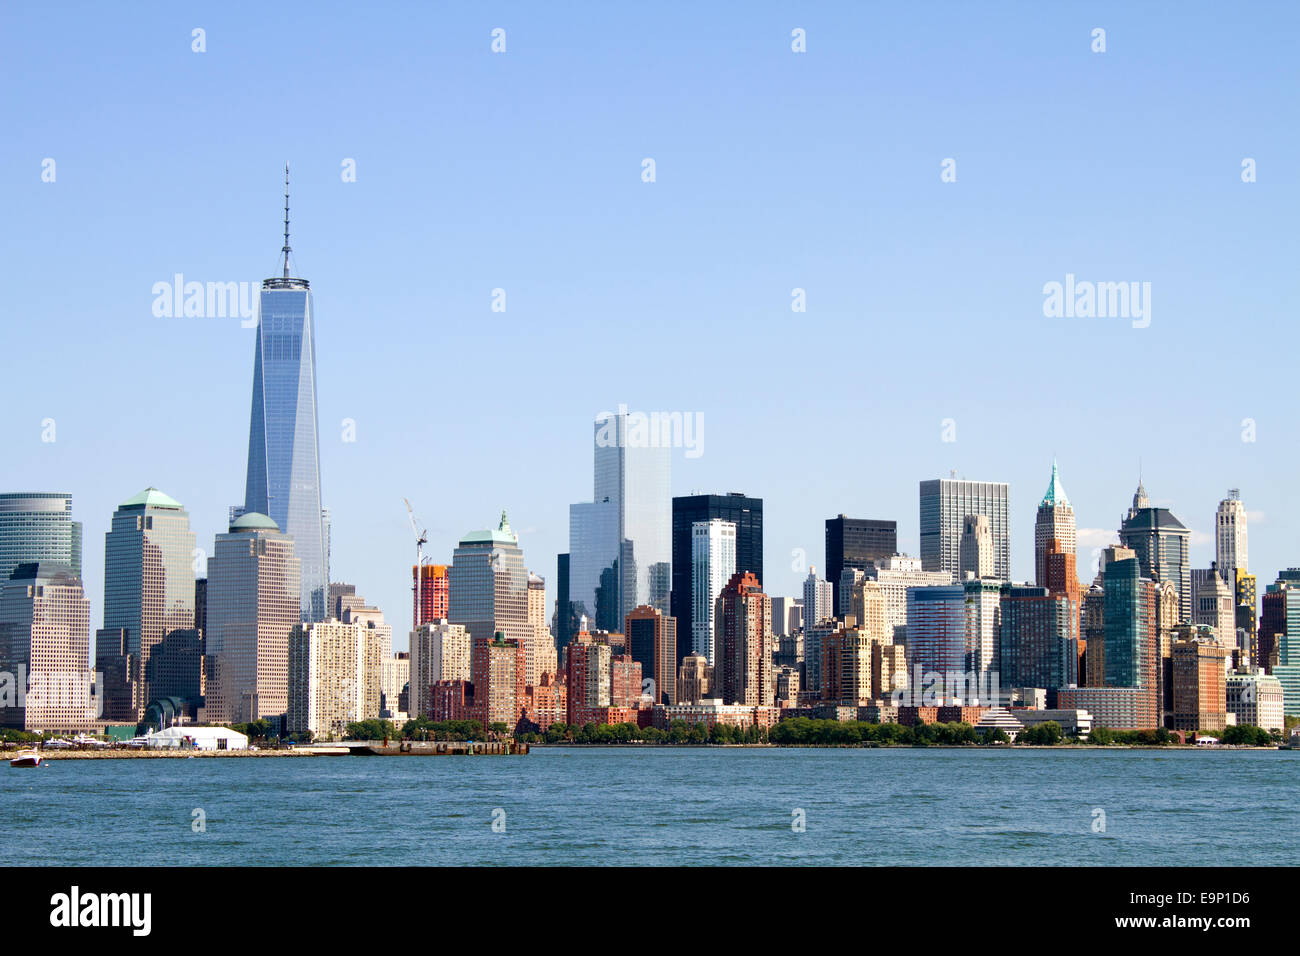 L'horizon de l'île de Manhattan à New York City, New York, USA, comme vu de l'autre côté de la rivière Hudson. Banque D'Images